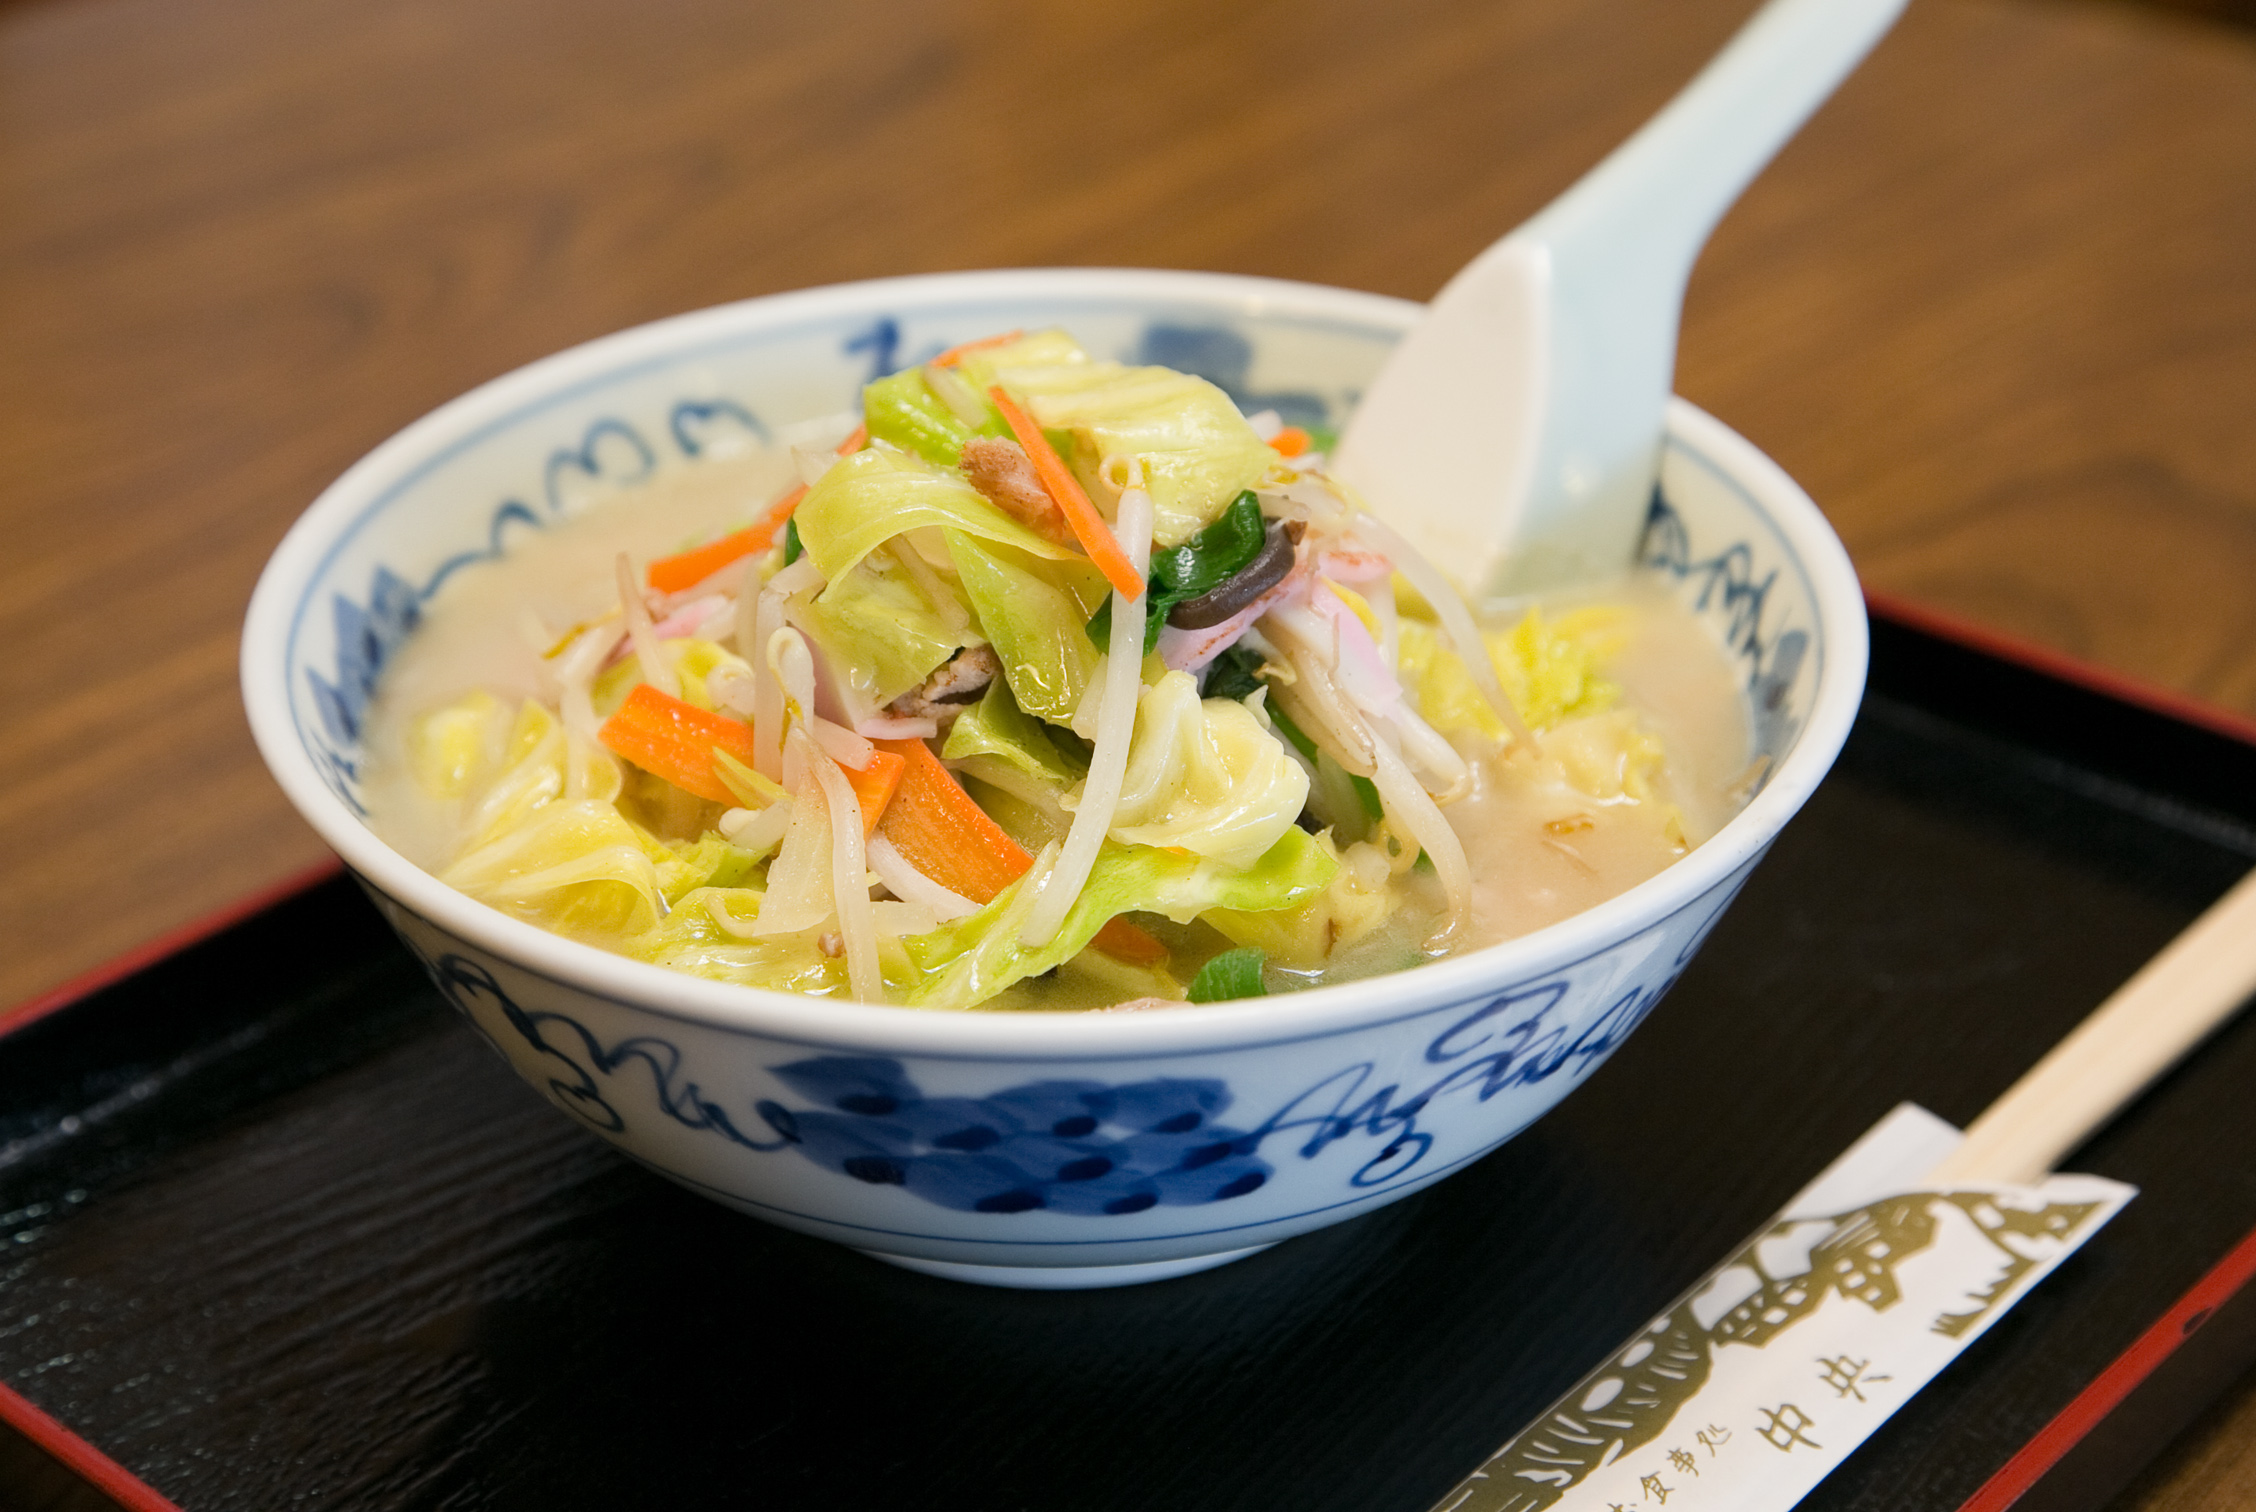 昭和3年の創業以来、祖母が創ったちゃんぽんの味を守り続けて80数年・・・特製のスープ(豚骨ベース)が決め手